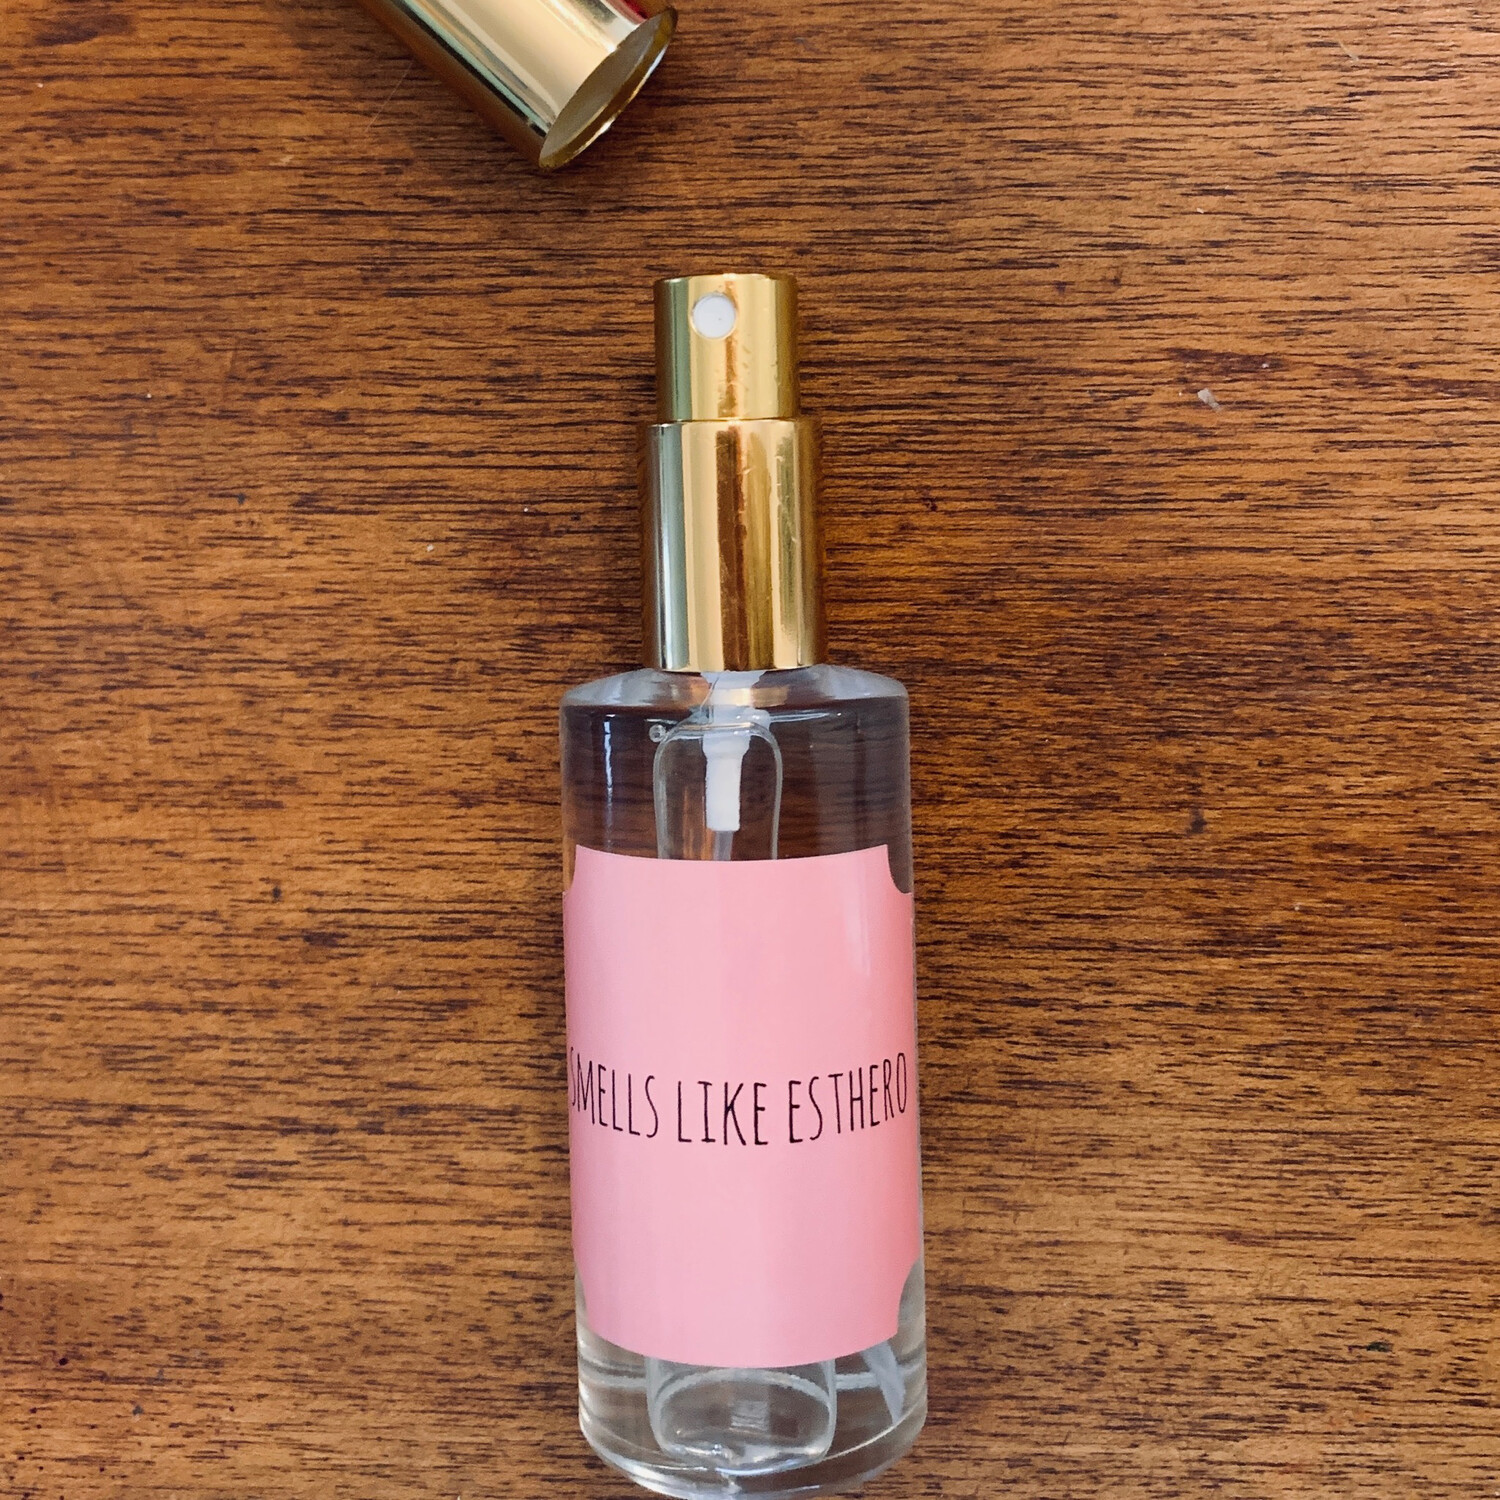 “Smells like Esthero” Perfume Spray